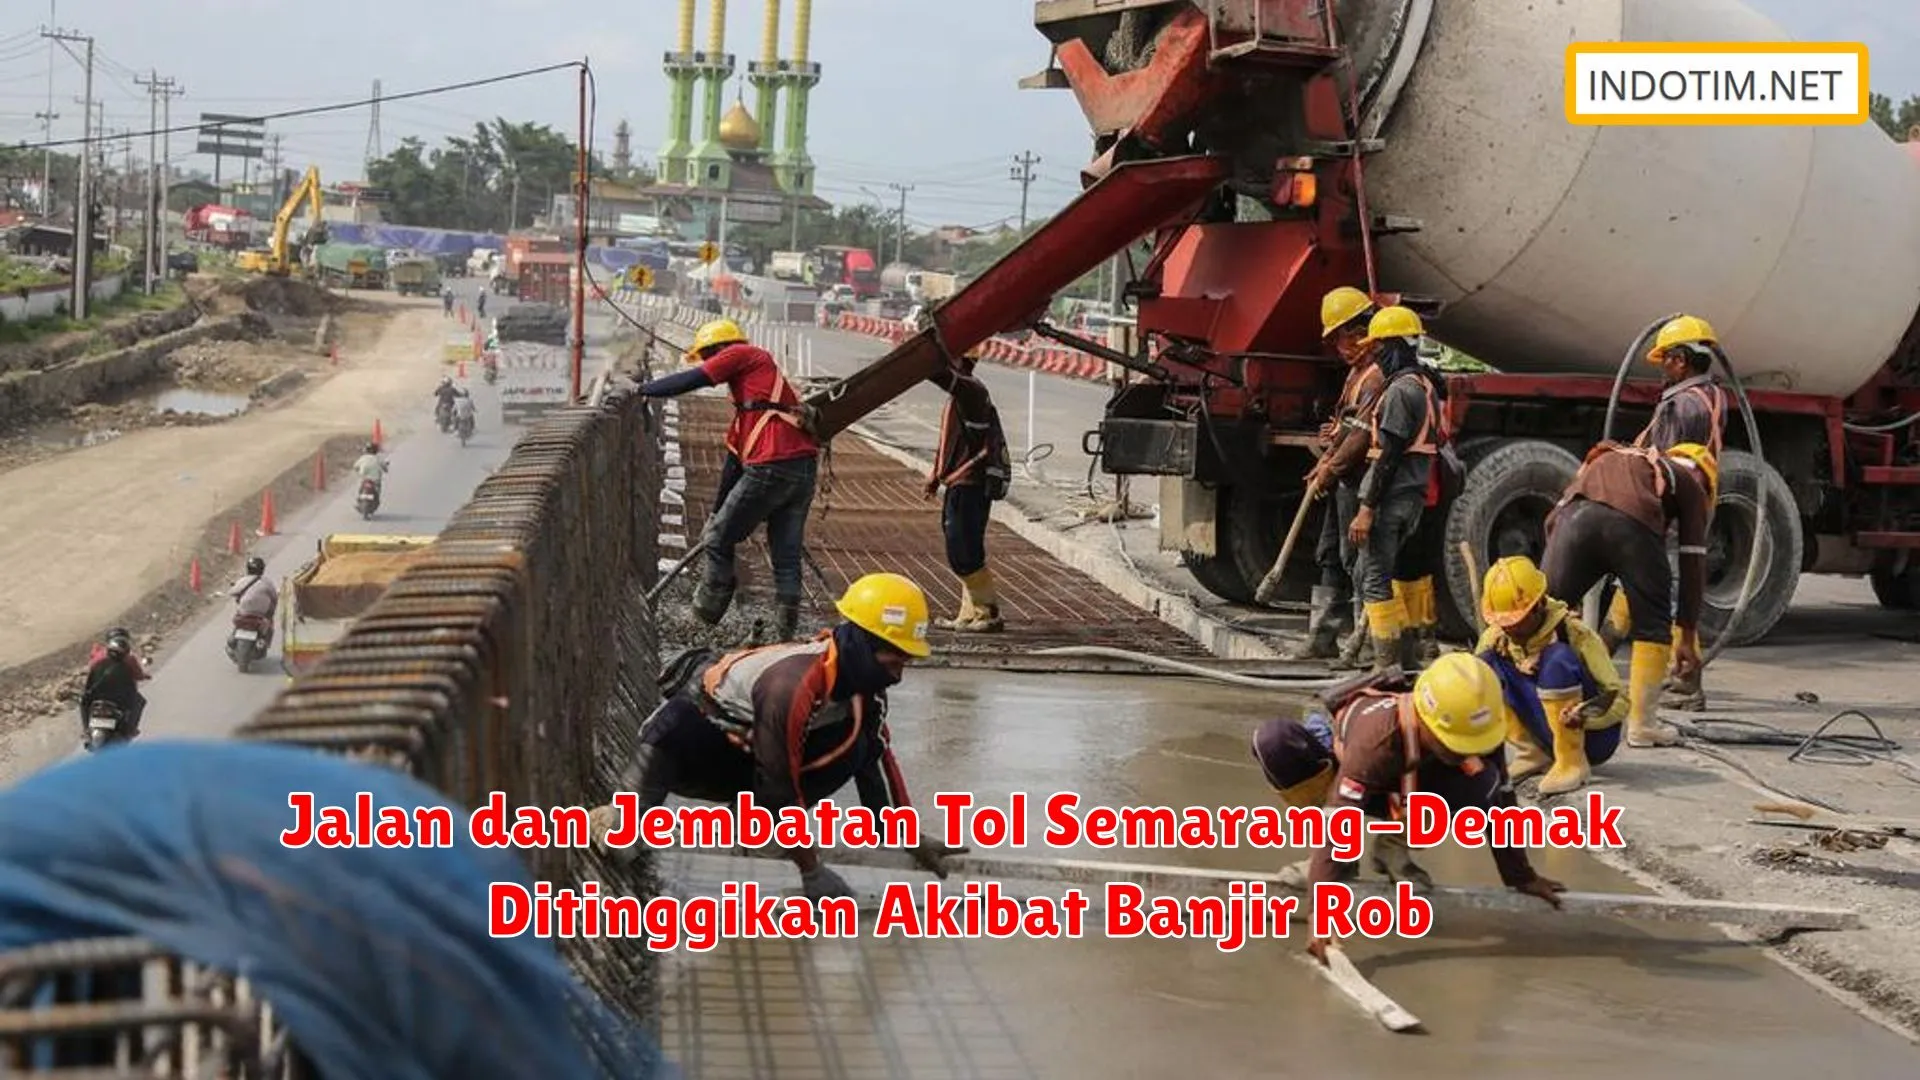 Jalan dan Jembatan Tol Semarang-Demak Ditinggikan Akibat Banjir Rob